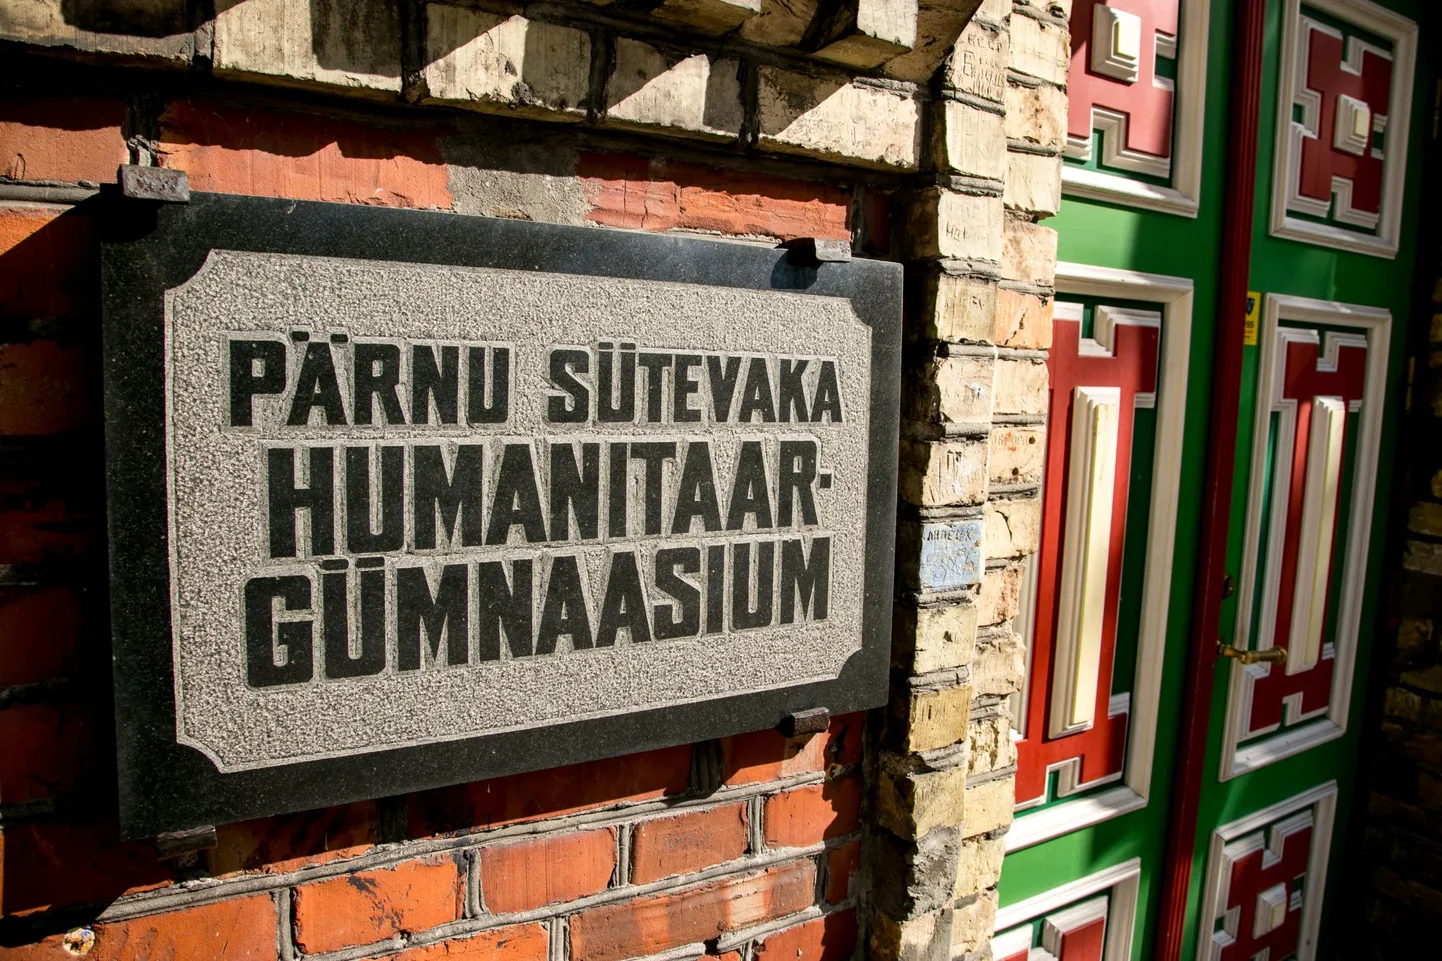 Sütevaka humanitaargümnaasium.